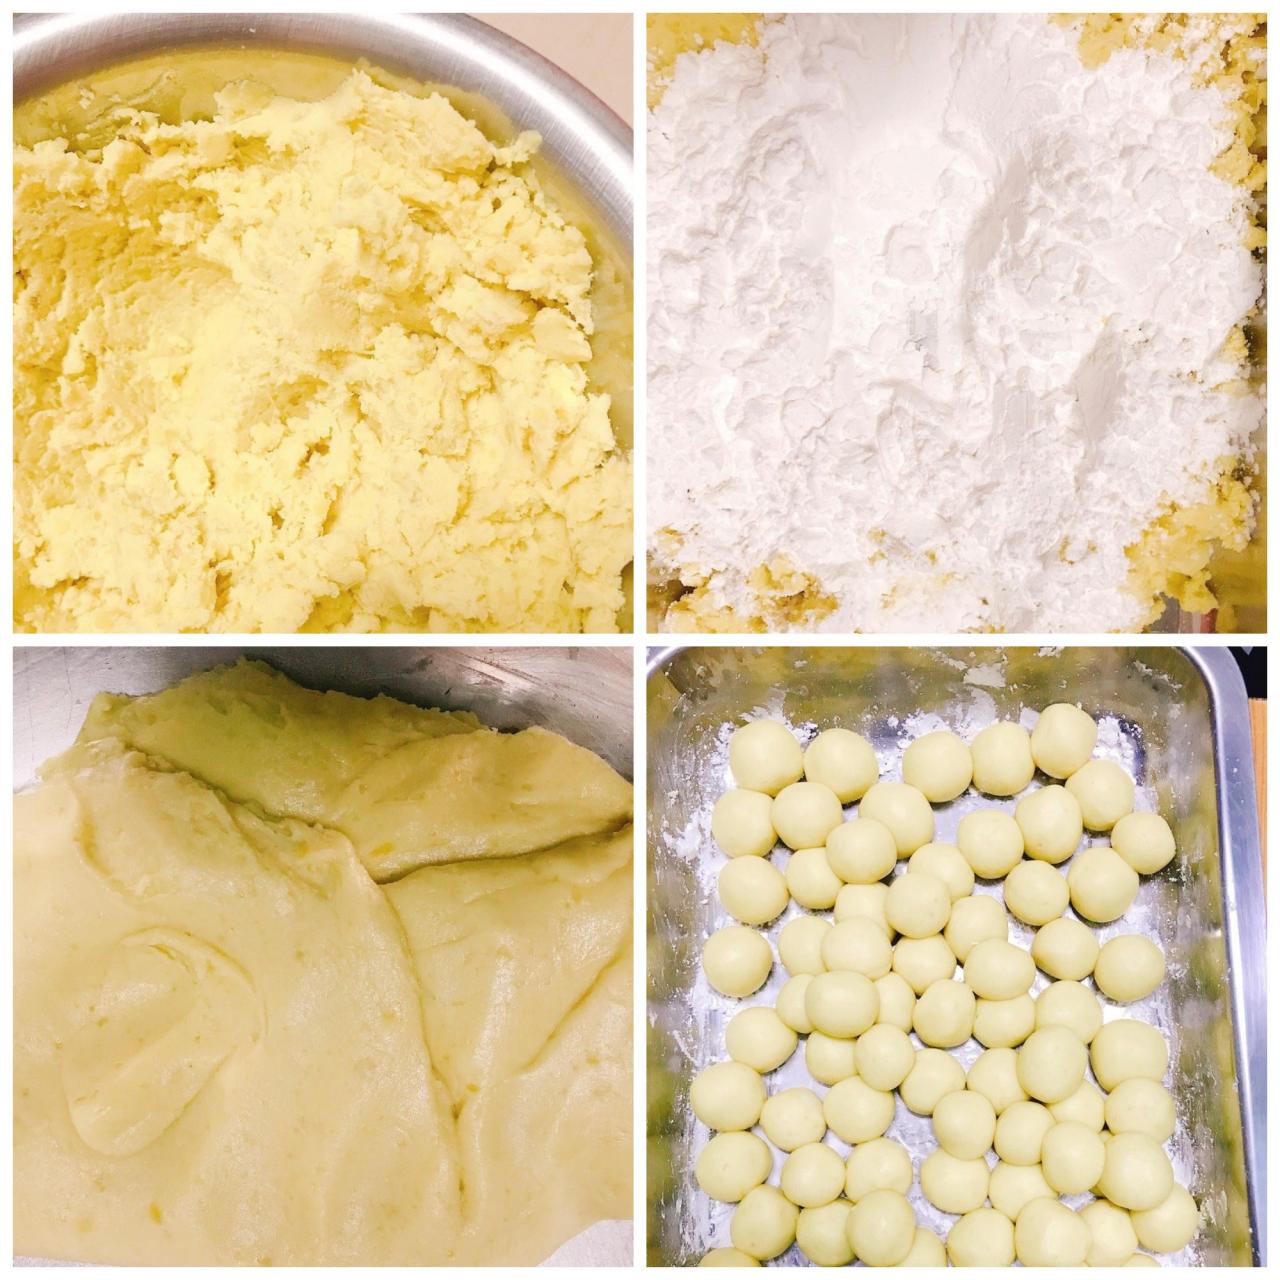 Sau khi hấp xong, lấy khoai cho vào tô, dùng nĩa tán nhuyễn, rồi trộn đều hỗn hợp nguyên liệu và nặn bánh